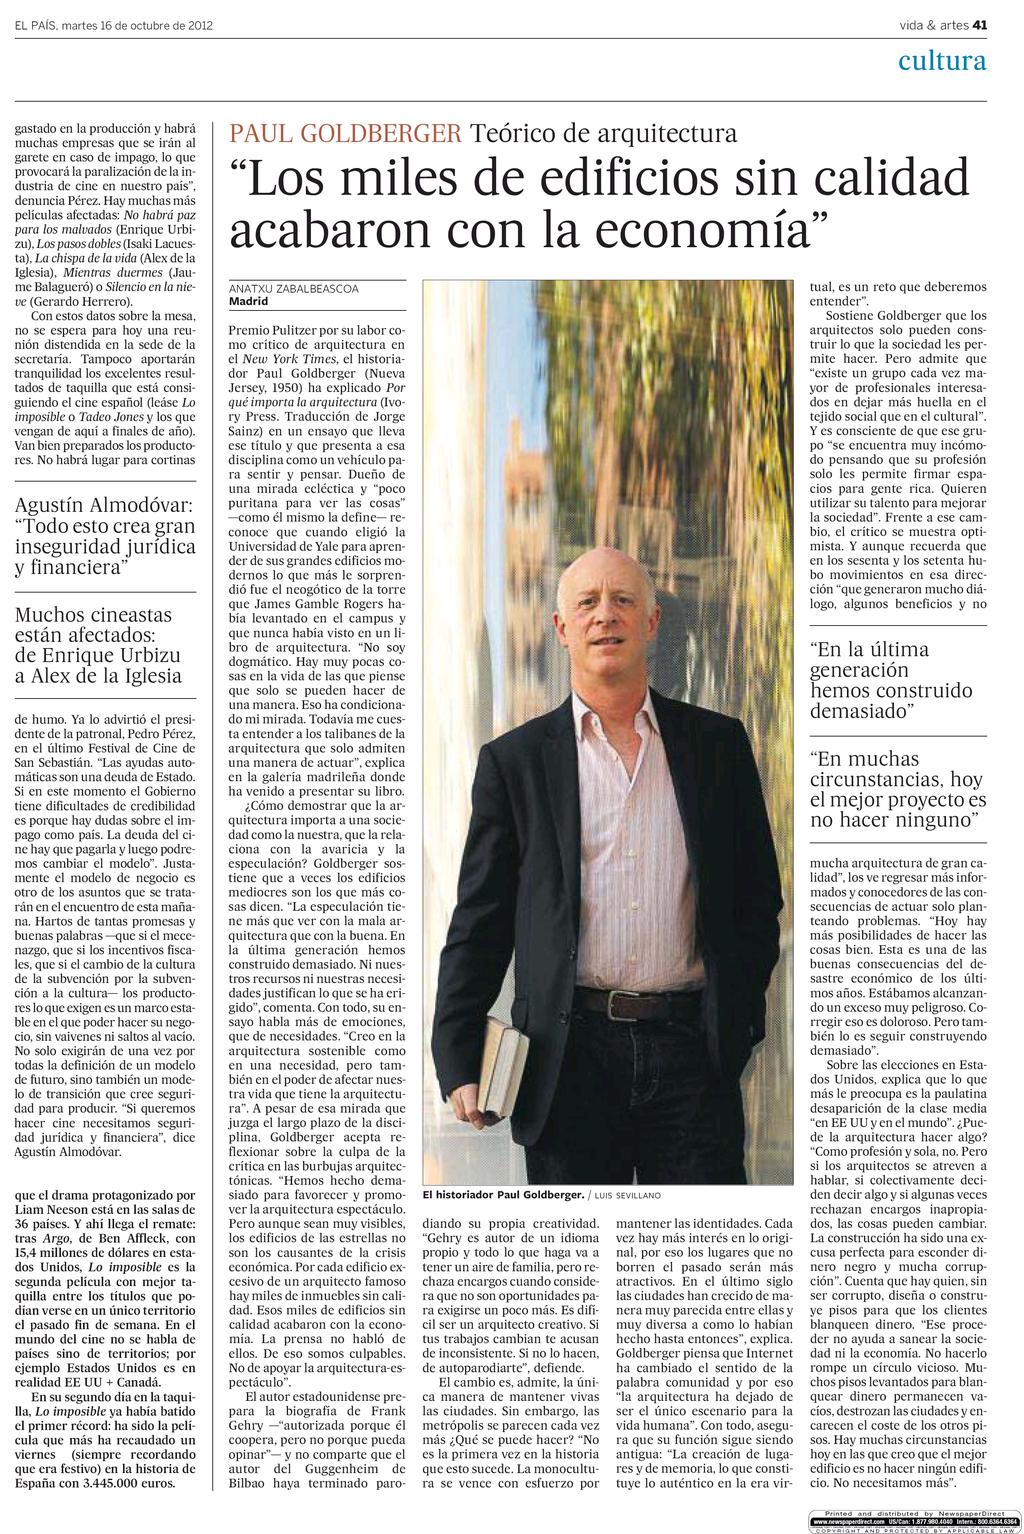 Kiosko y Más - El País (Nacional) - 16 oct 2012 - Page #41 1 de 1